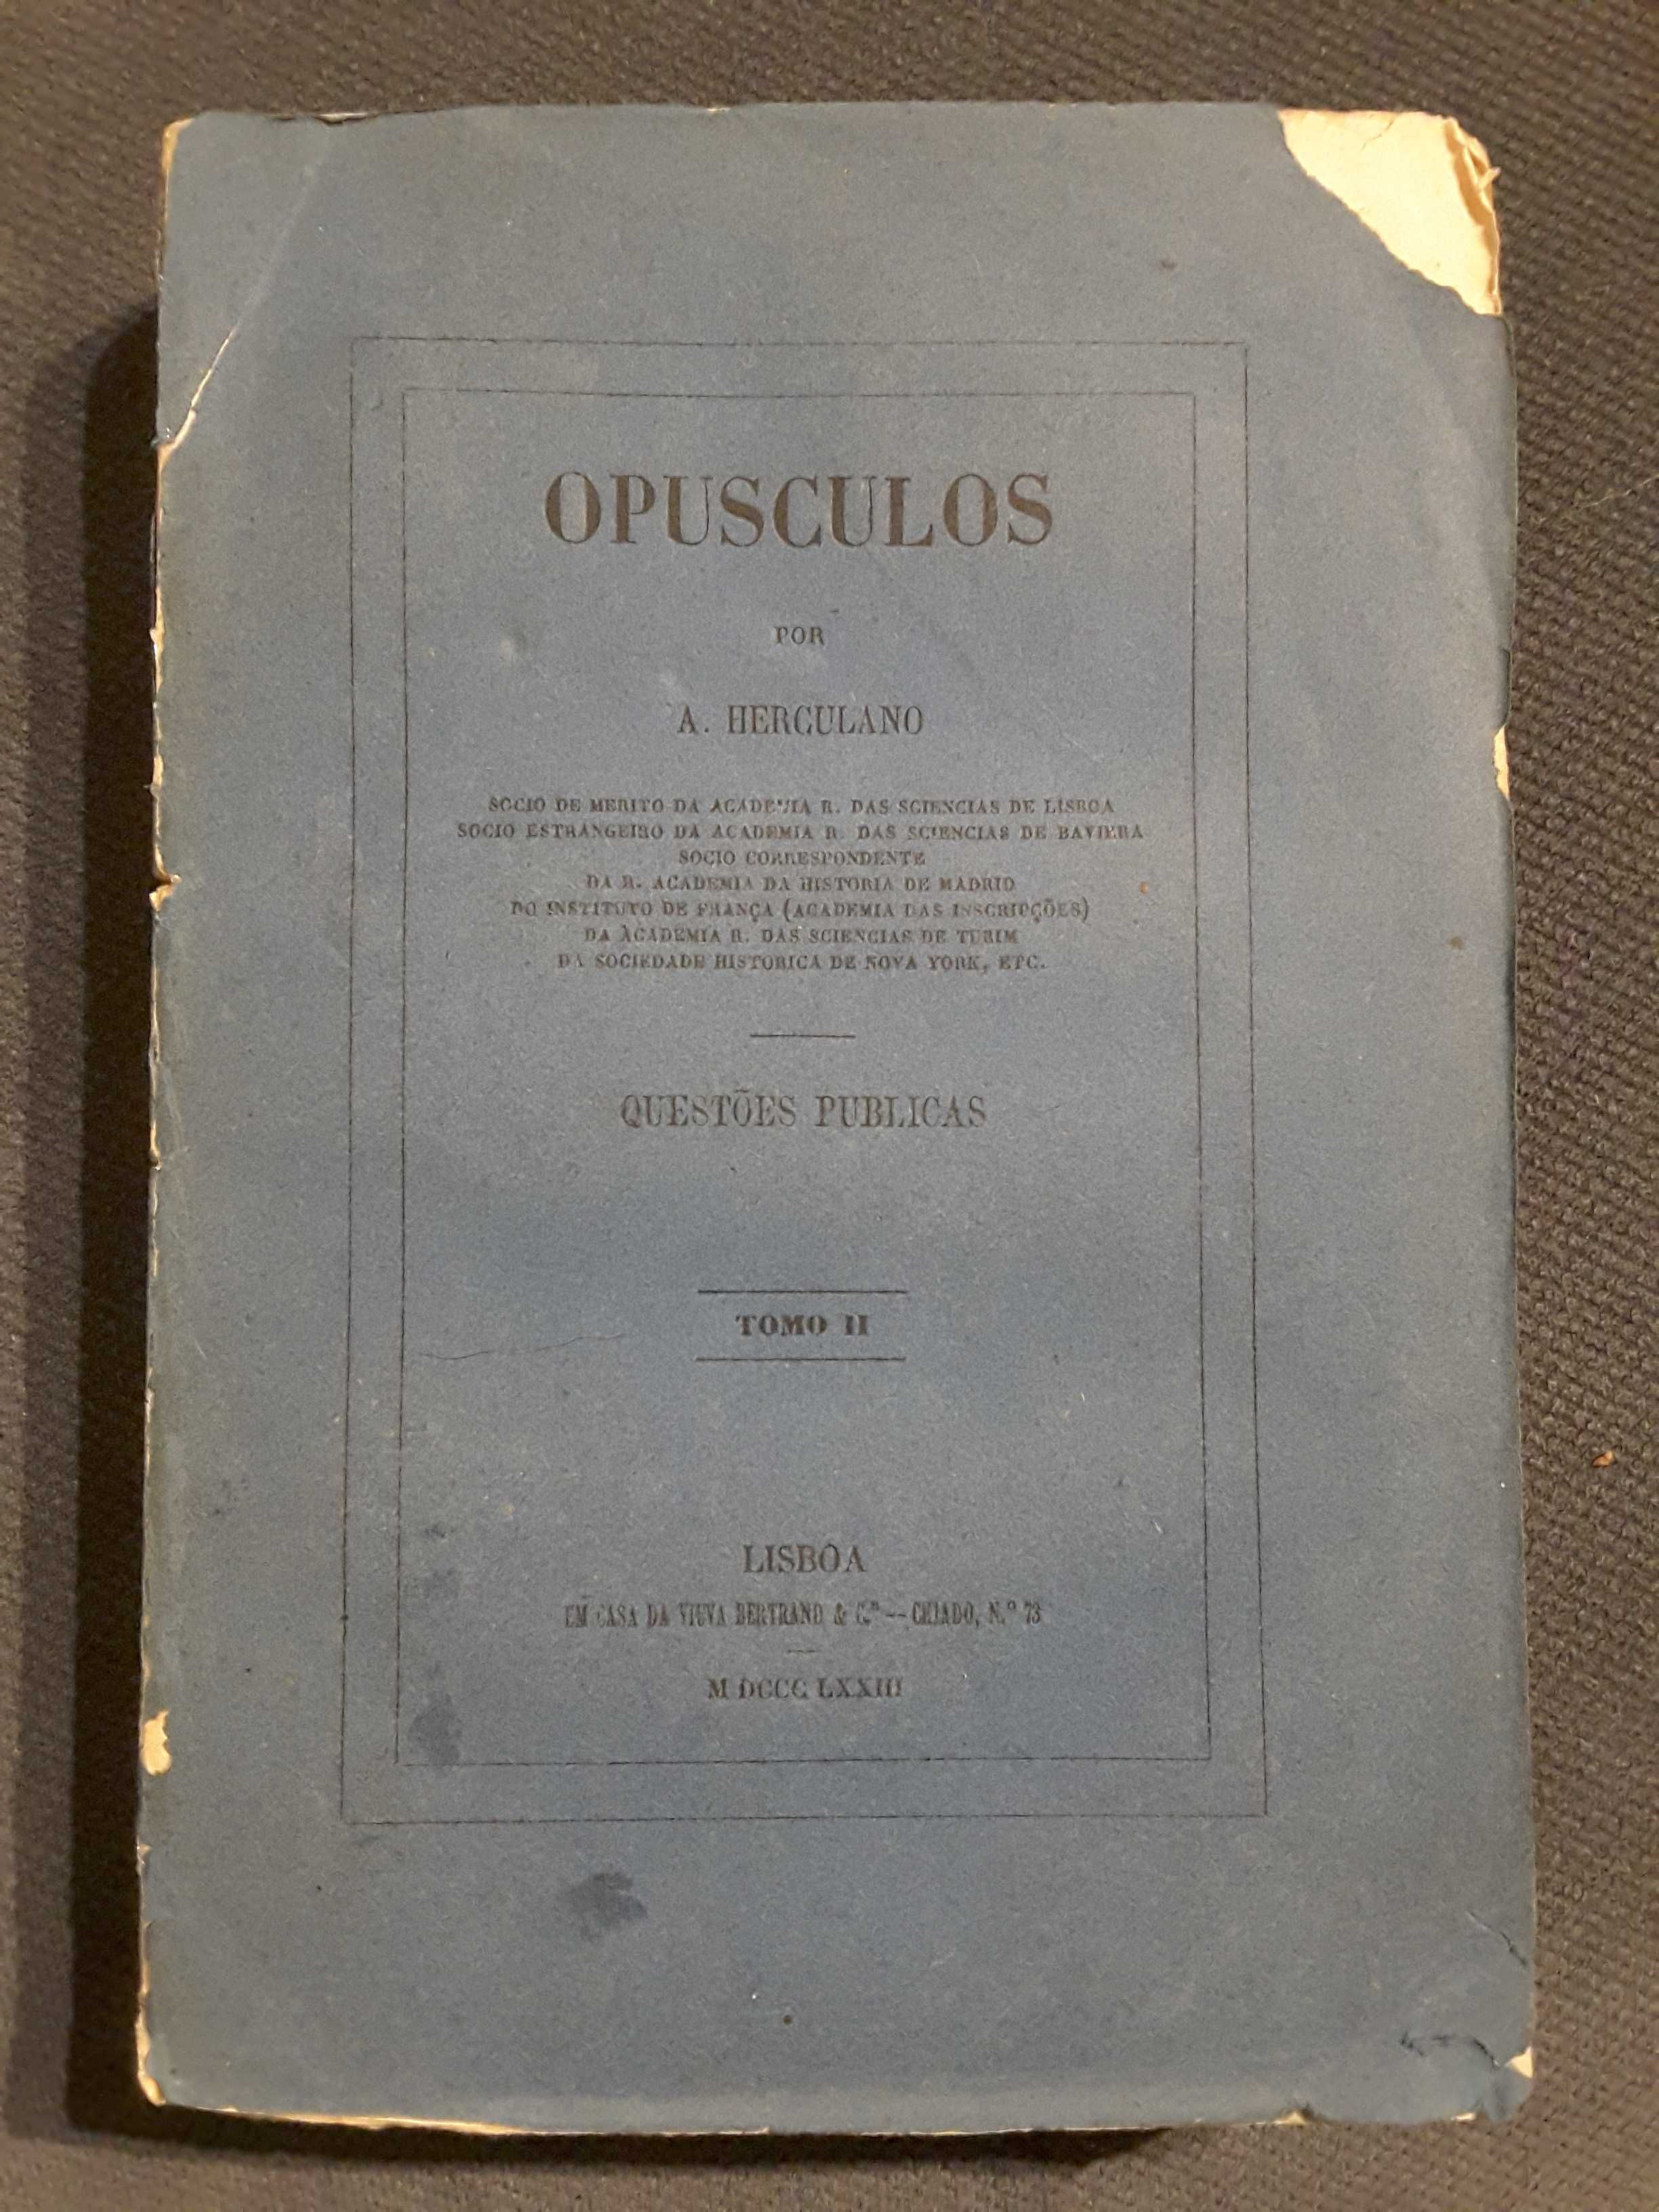 Marechais de D. Maria II /Tractado Anglo-Portuguez (1884)/ Herculano